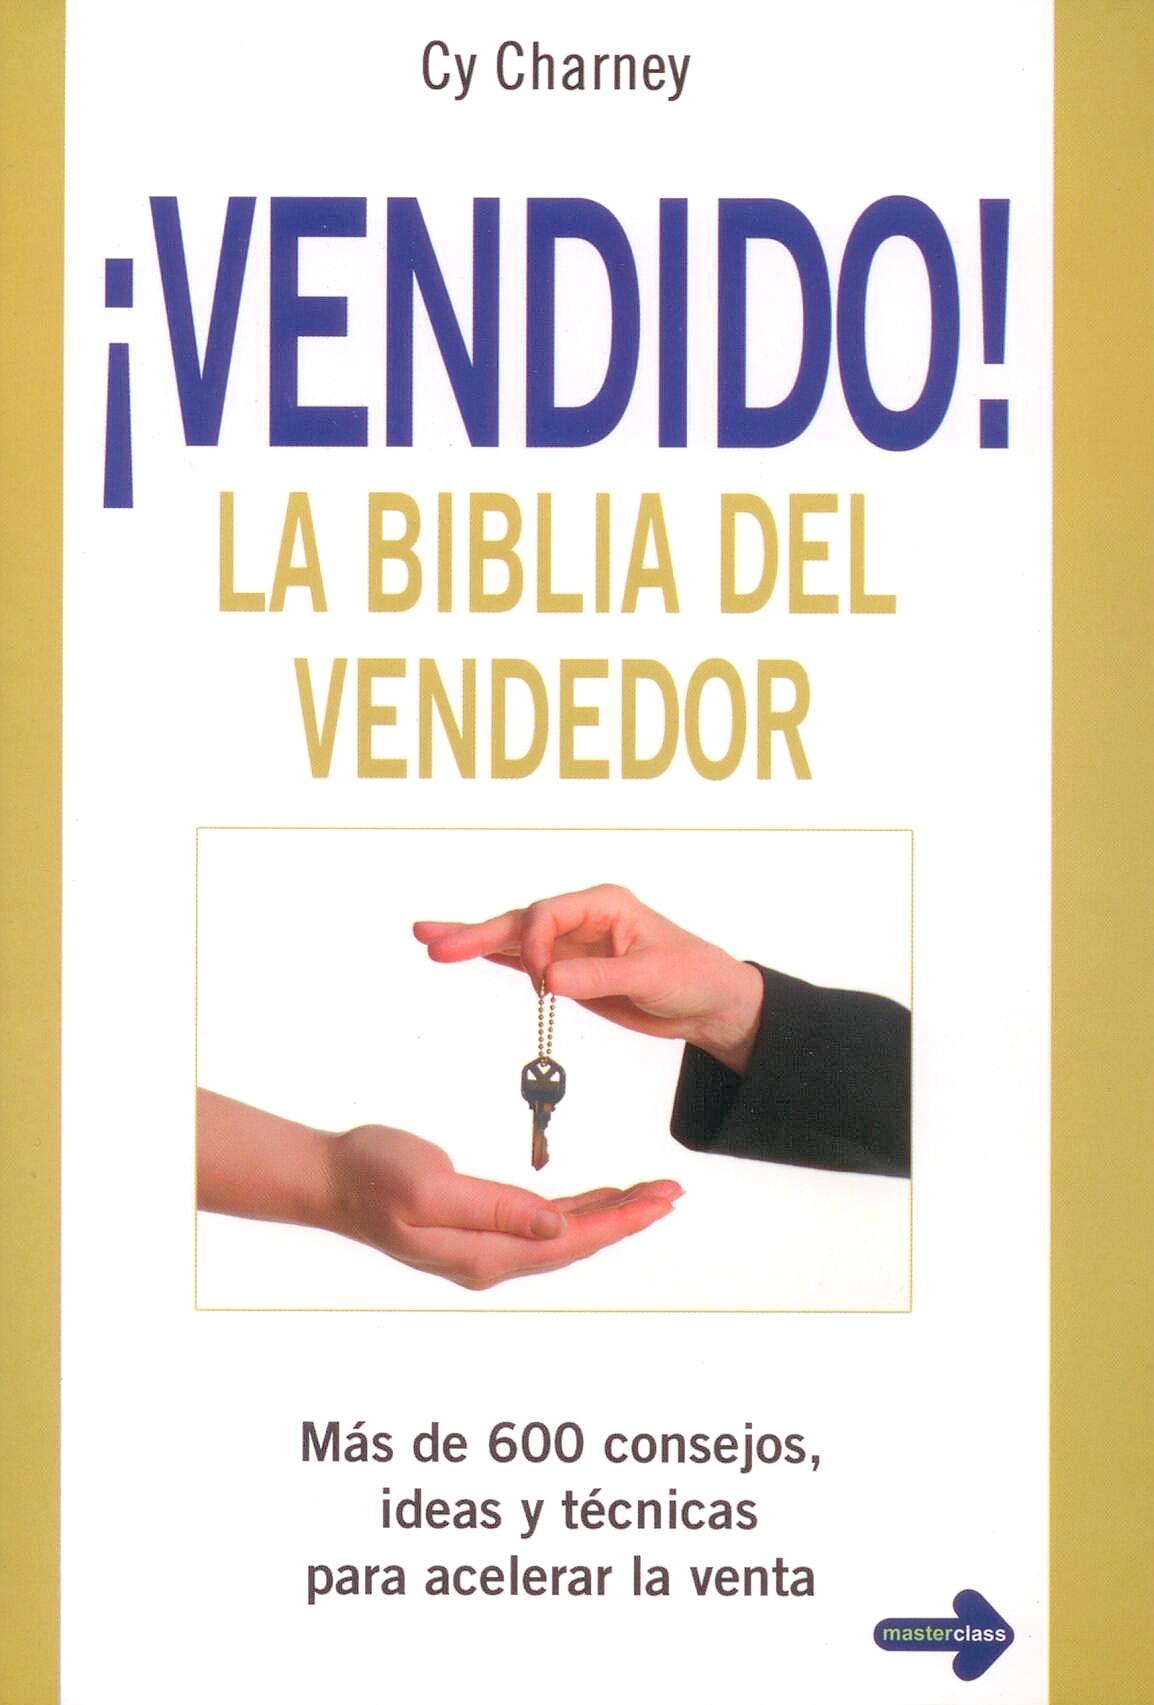 ¡Vendido! la Biblia del Vendedor